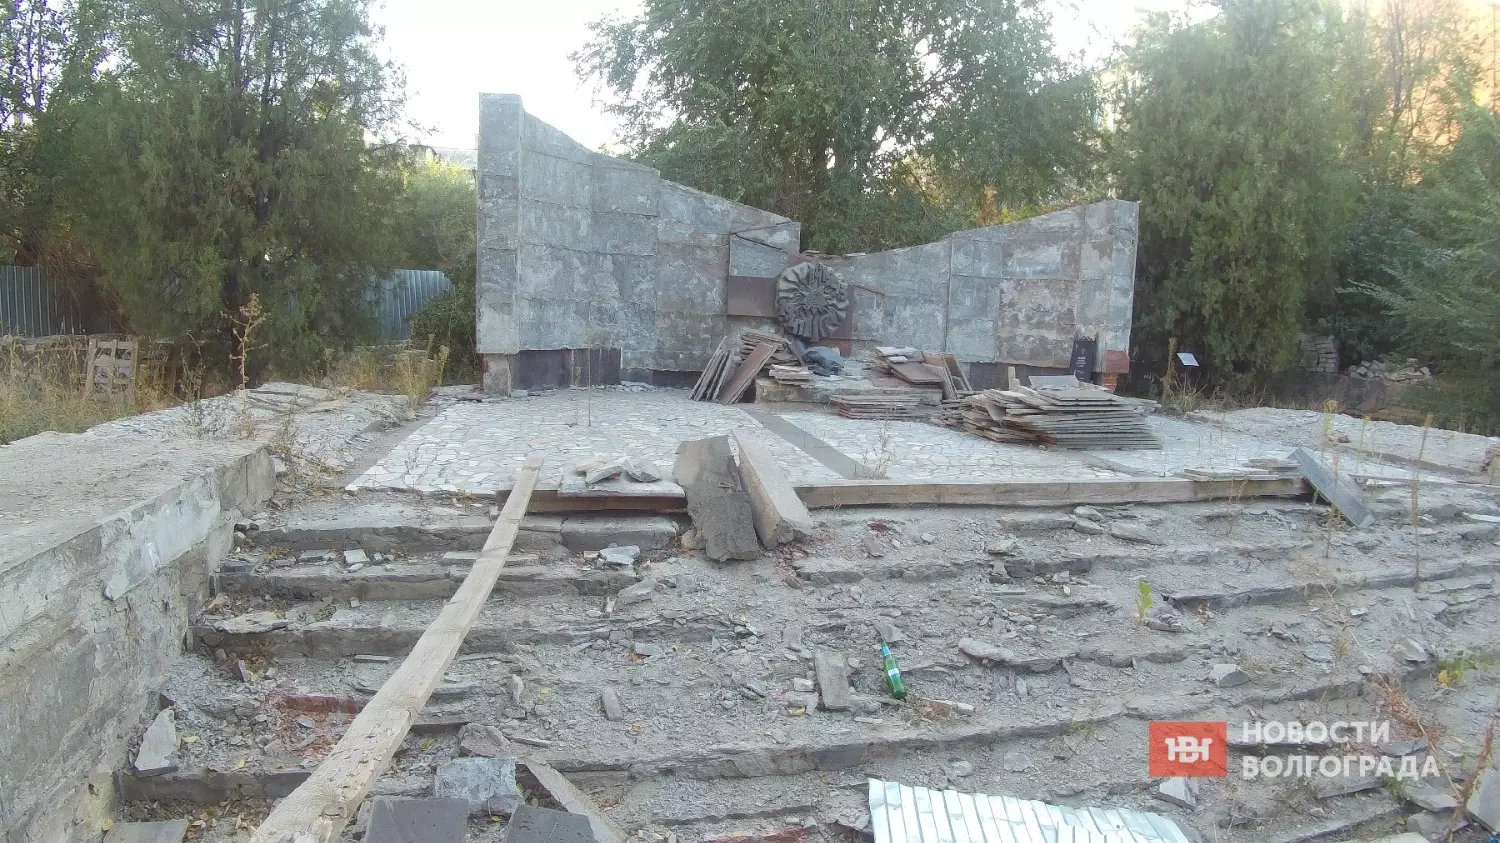 Сейчас Братская могила в Волгограде находится в плачевном состоянии